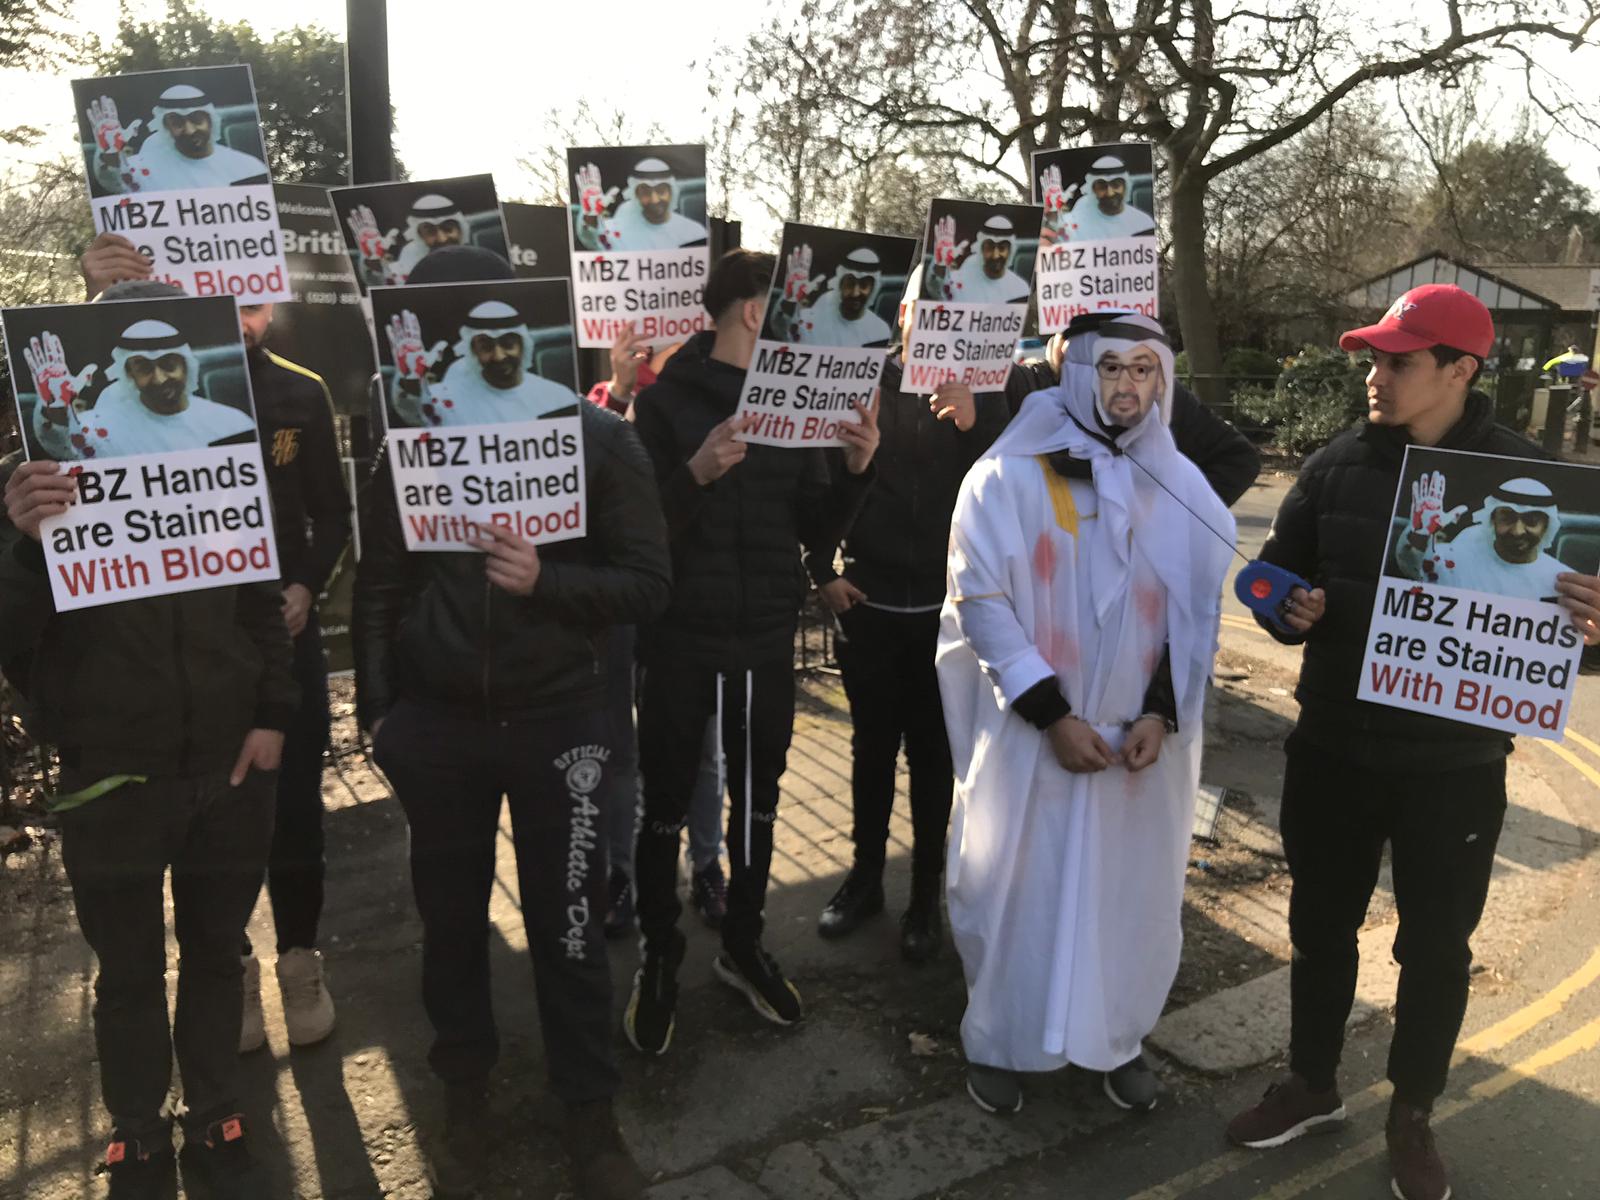 تظاهرات علیه جنایات شیخ زاید در قلب لندن+ تصاویروقتی پشت پرده نمایش پر زرق و برق امارات از دموکراسی و همزیستی مسالمت آمیز افشا می شود 2